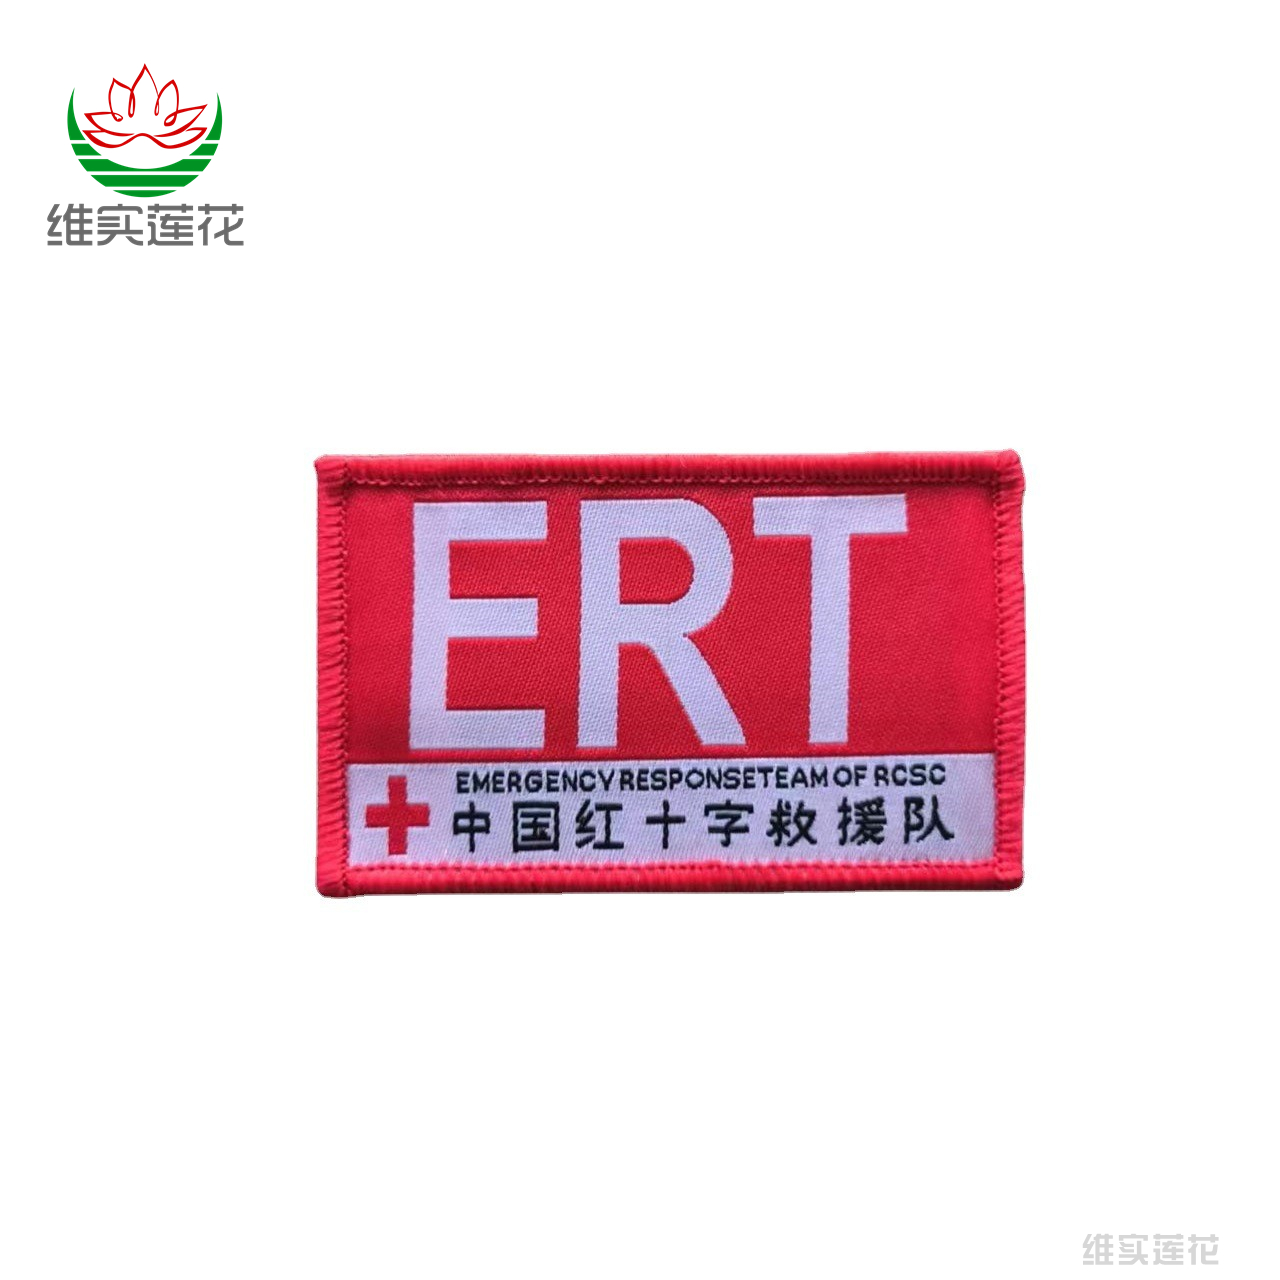 中国红十字会袖标志愿者应急蓝天神鹰救援队义工臂章可拆卸魔术贴